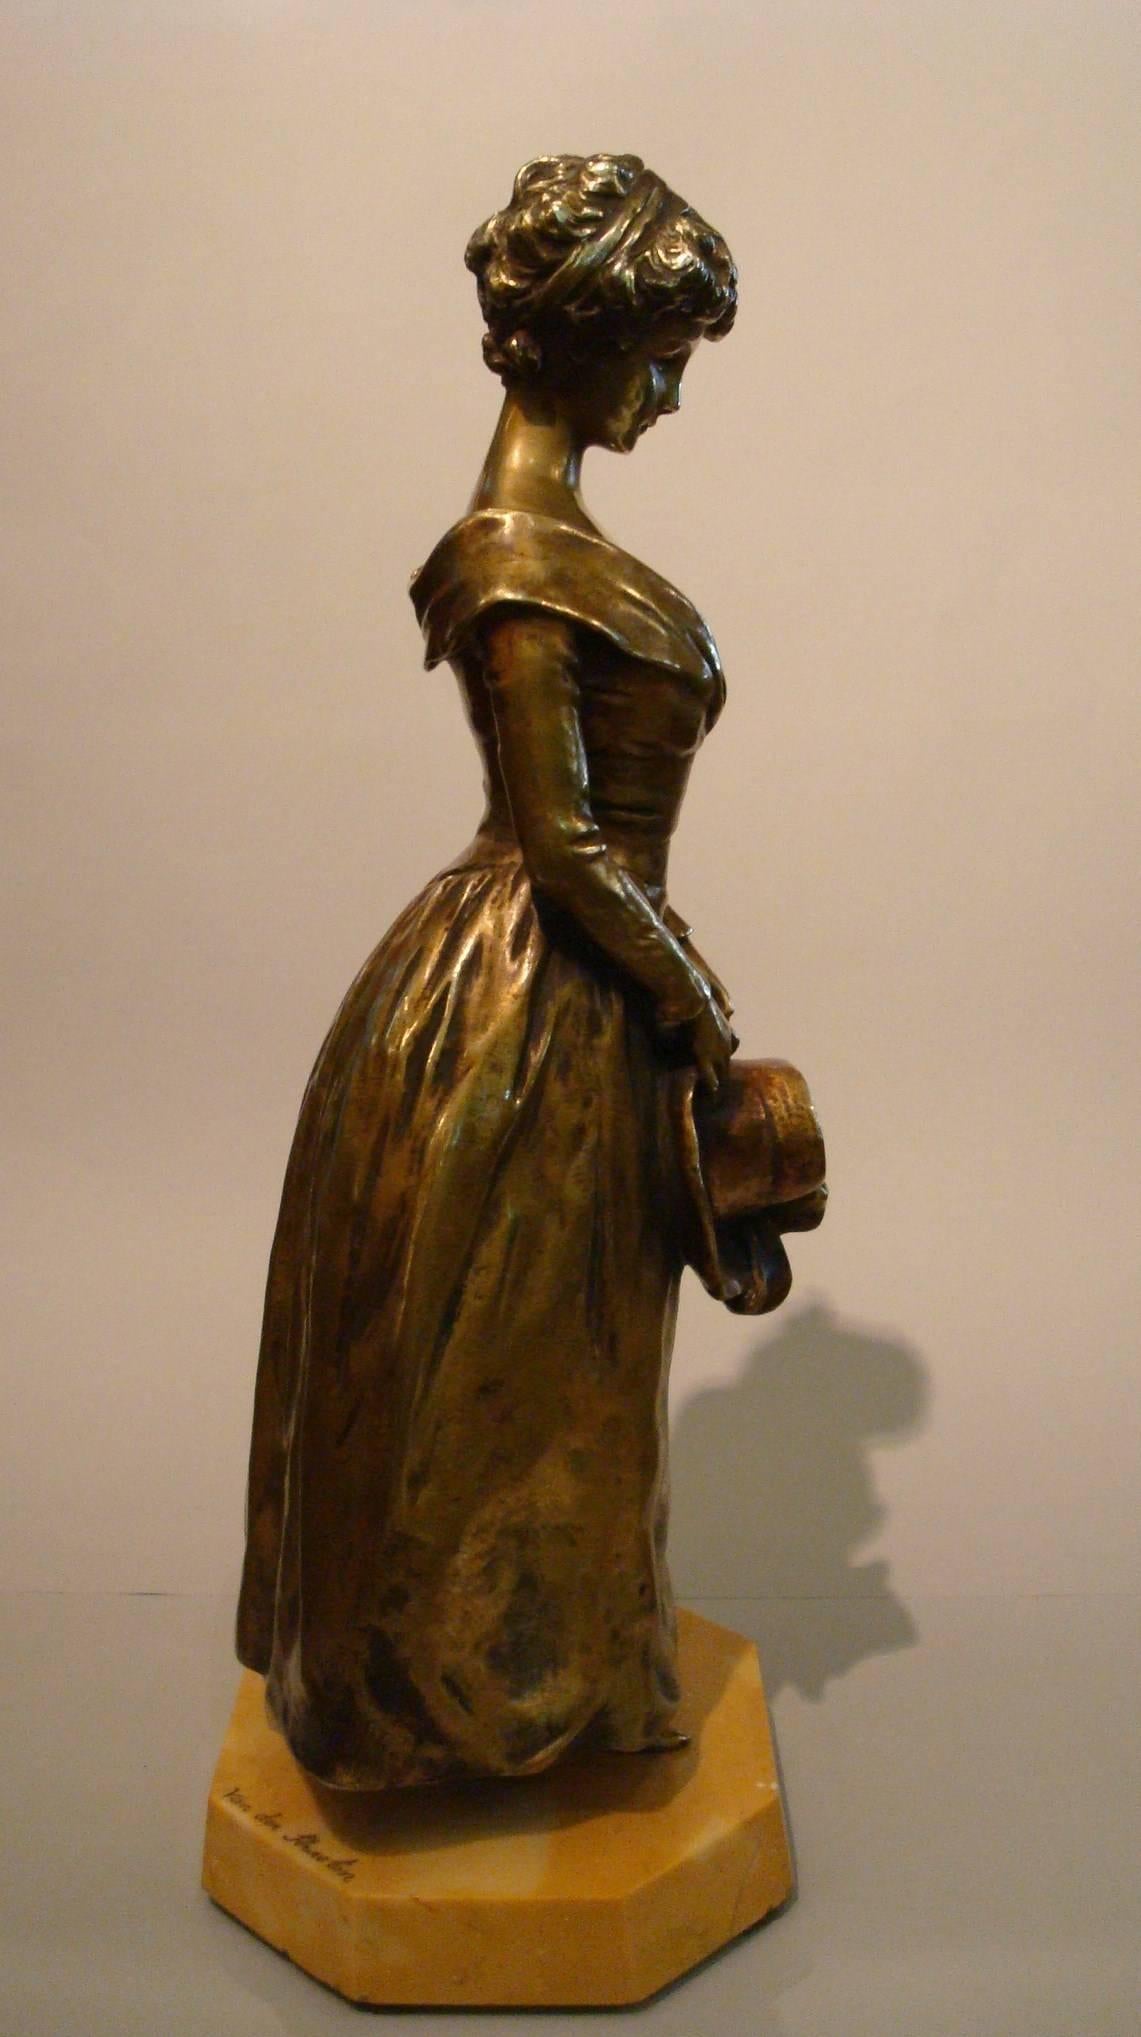 Bronze de la fin du XIXe siècle réalisé par le sculpteur belge Georges Van der Straeten (1856-1941) représentant une jeune fille élégante debout avec un chapeau sur les mains. Signé Van der Straeten sur la base, numéroté sous la figure.  Le sceau de